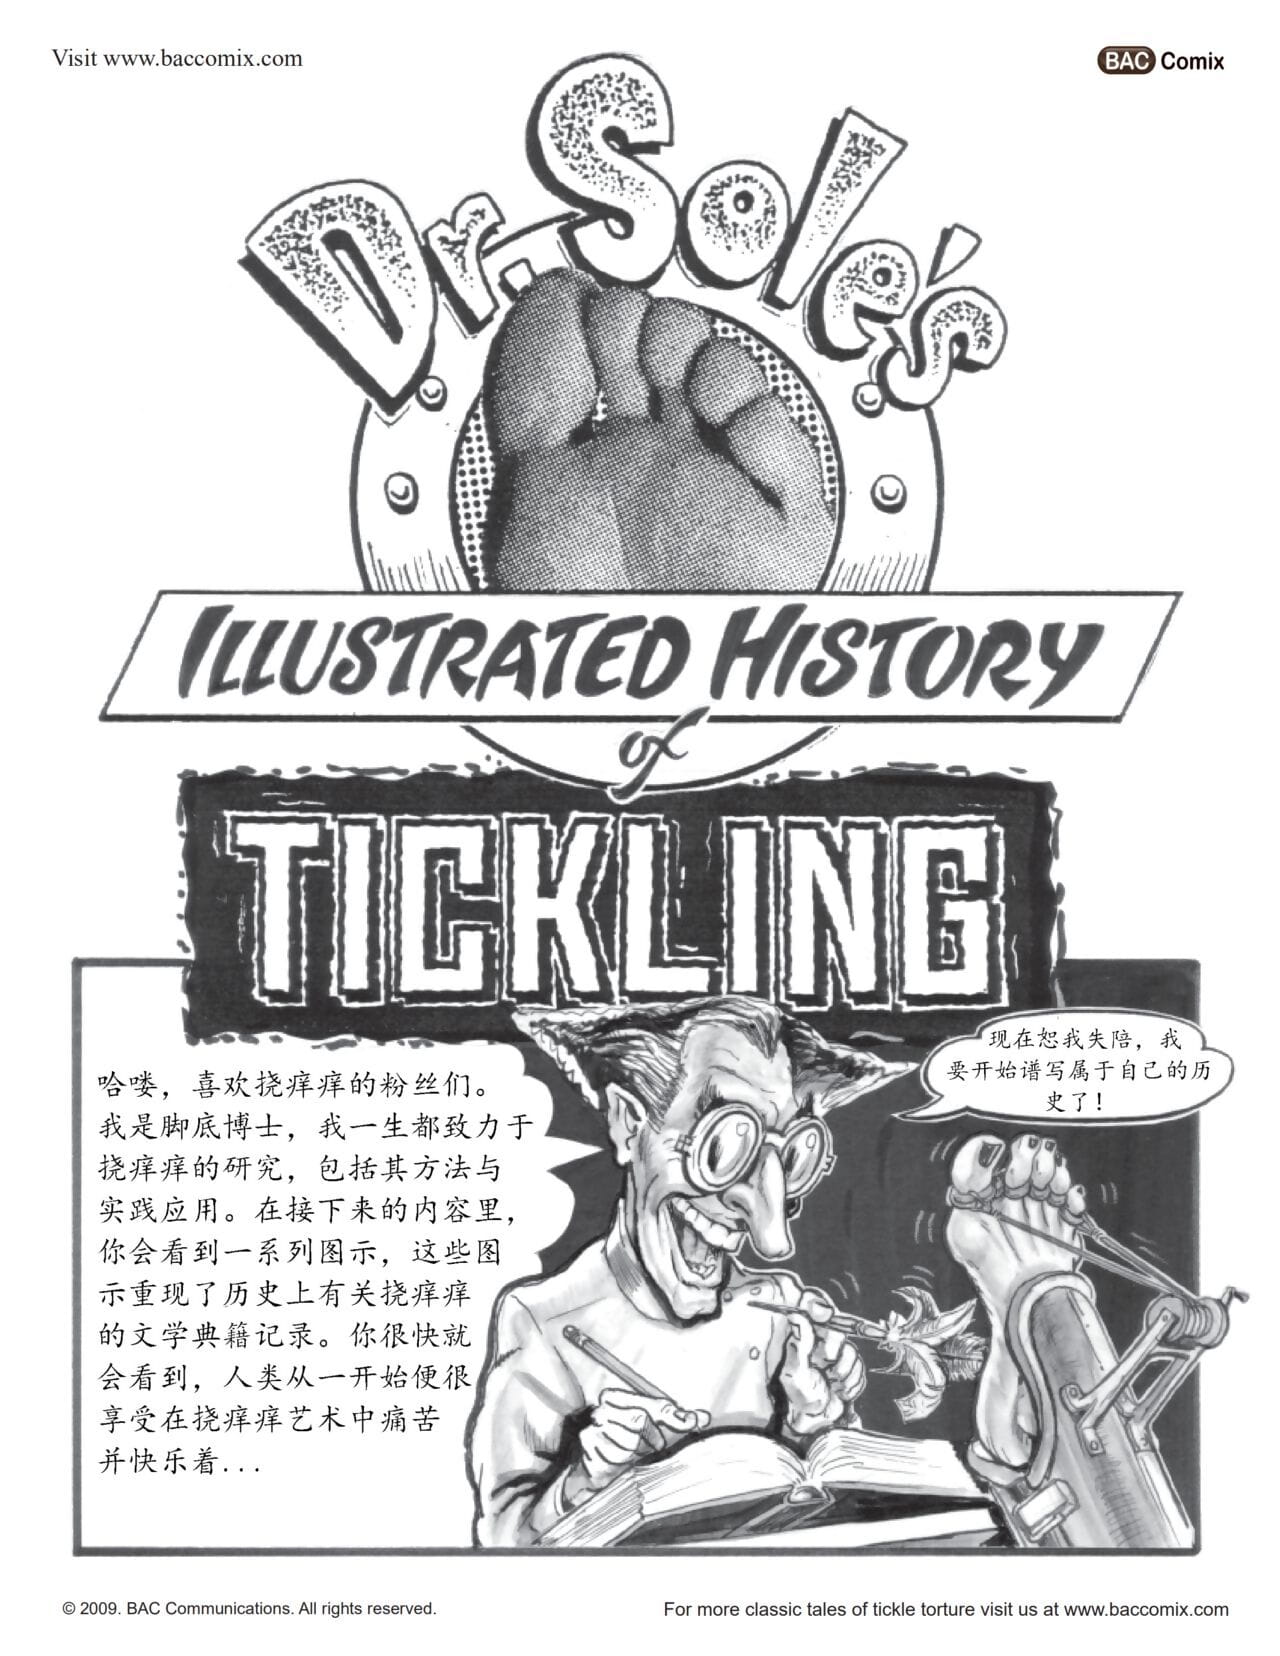 Geschichte der tickling（挠痒秘史）【chinese】【凛风孤隼汉化】 page 1